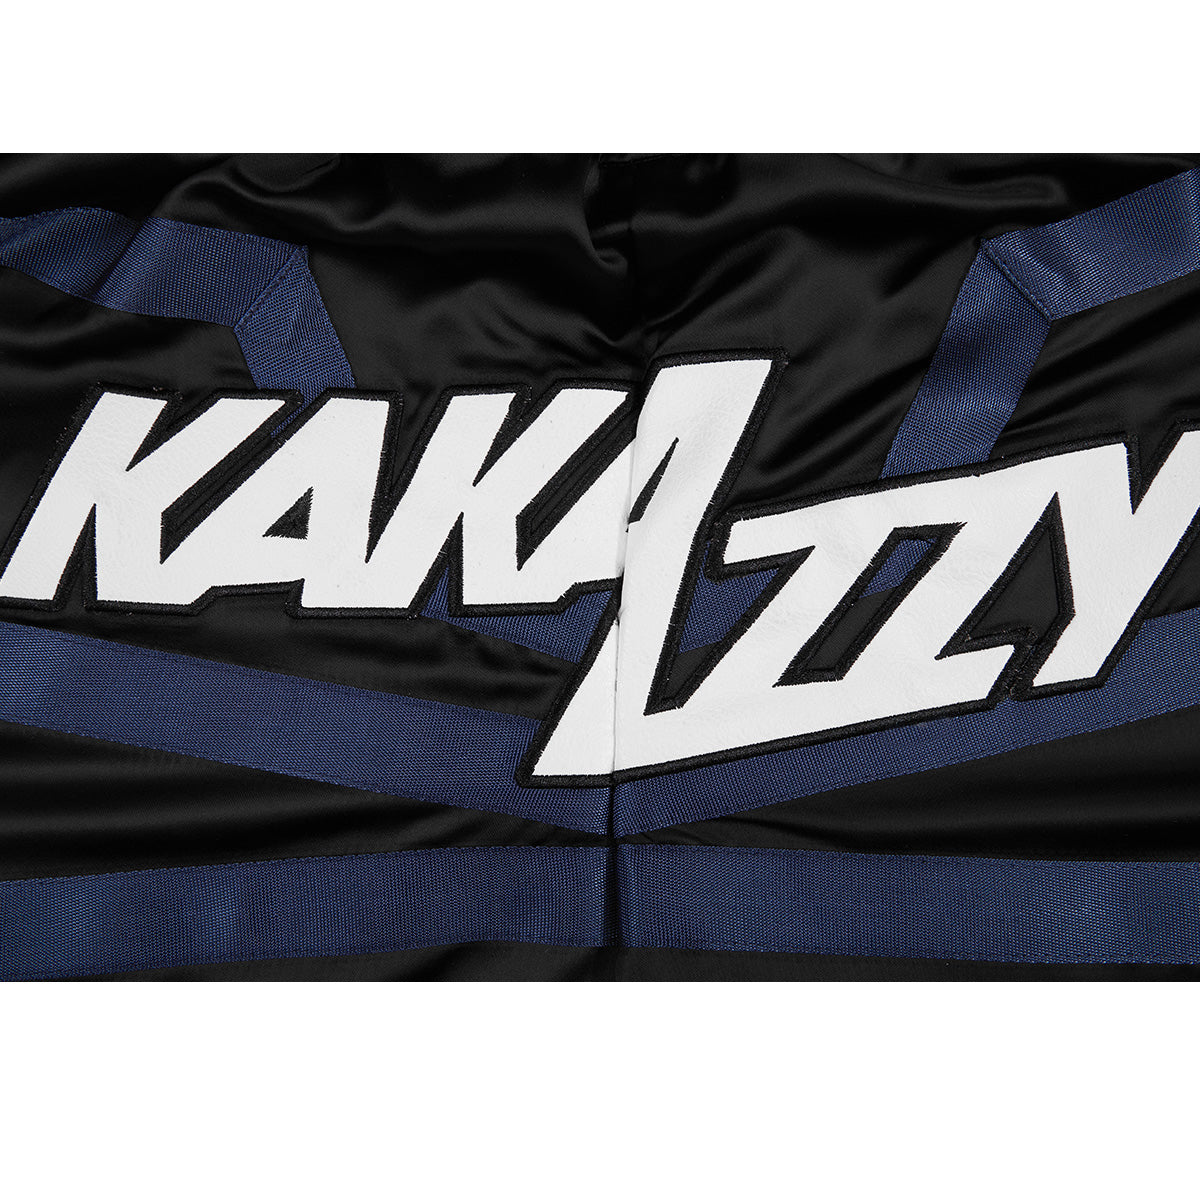 Kakazzy Muay Thai Shorts DarkBlue